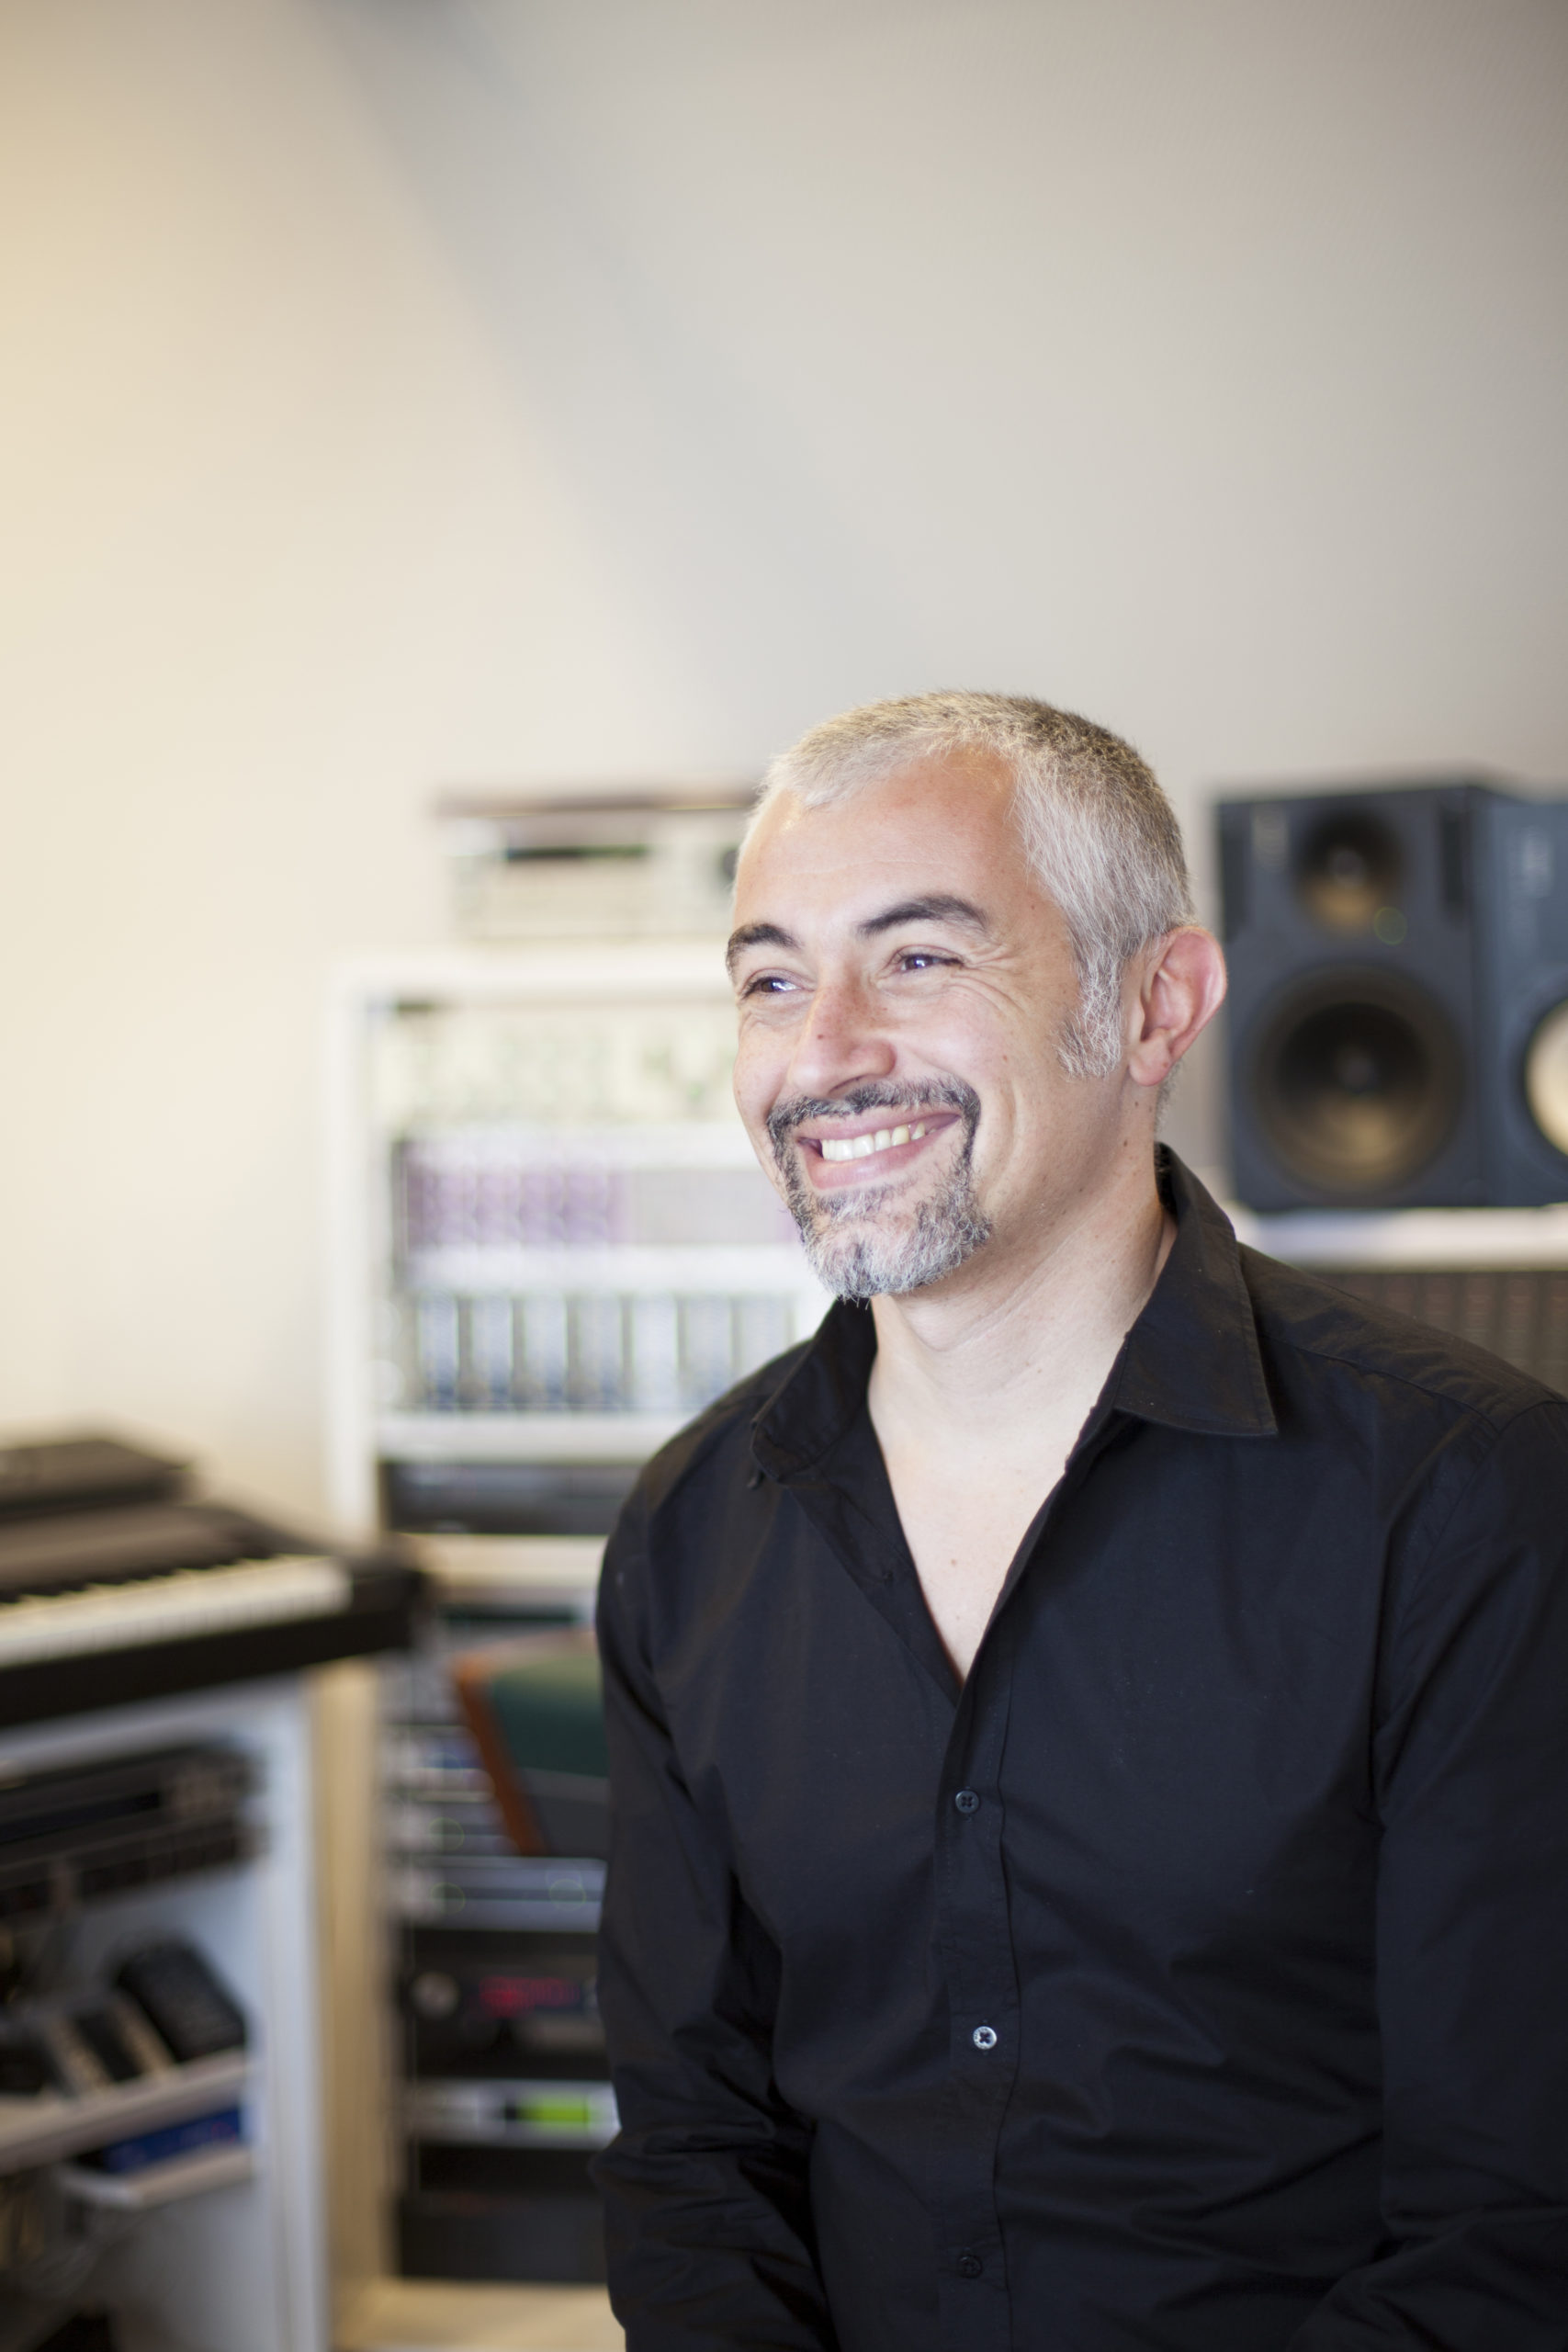 Bojan Vuletic steht in einem Studioraum, umgeben von Technik und lächelt jemanden an.